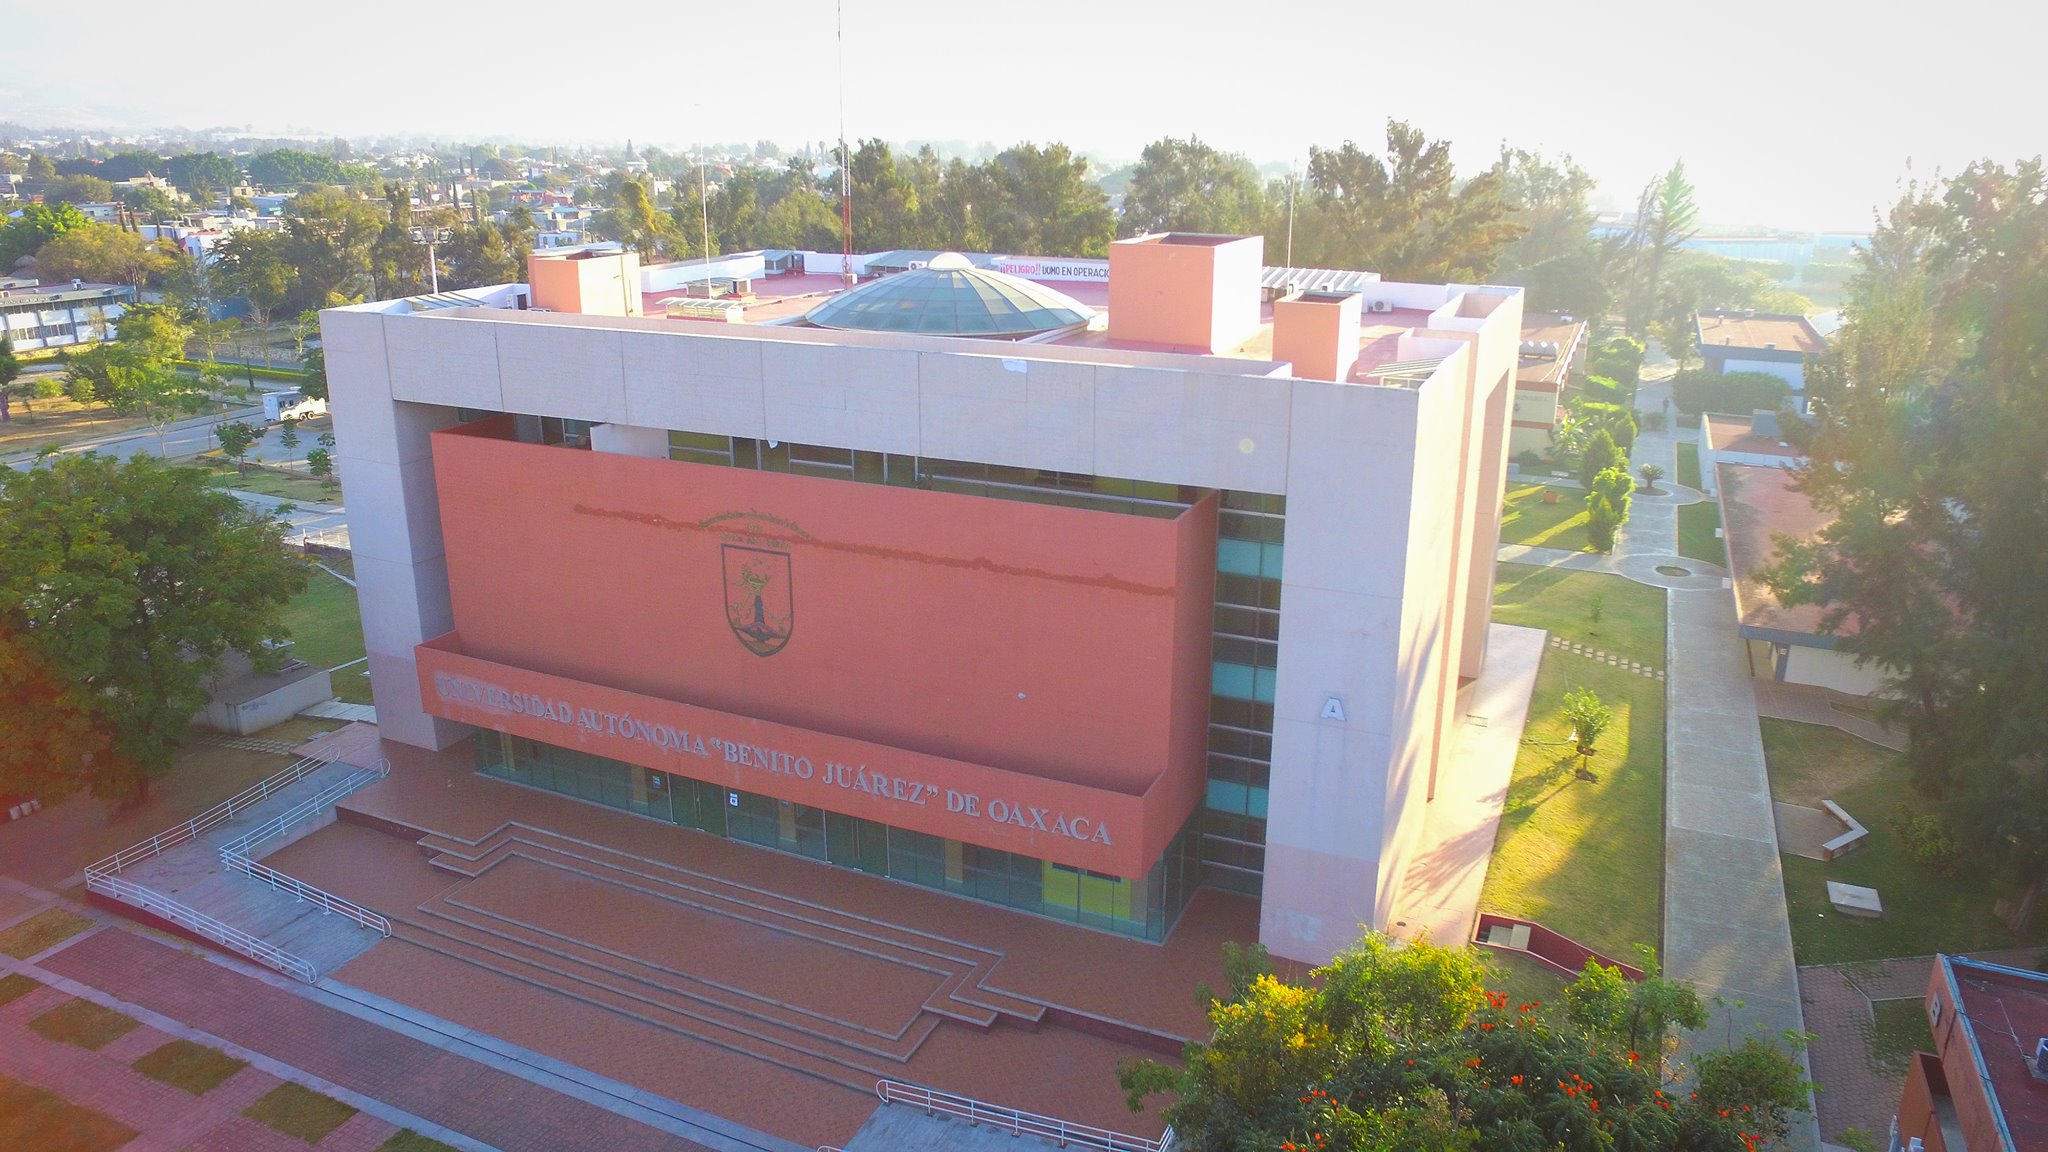 Universidad Autónoma Benito Juárez de Oaxaca (UABJO).